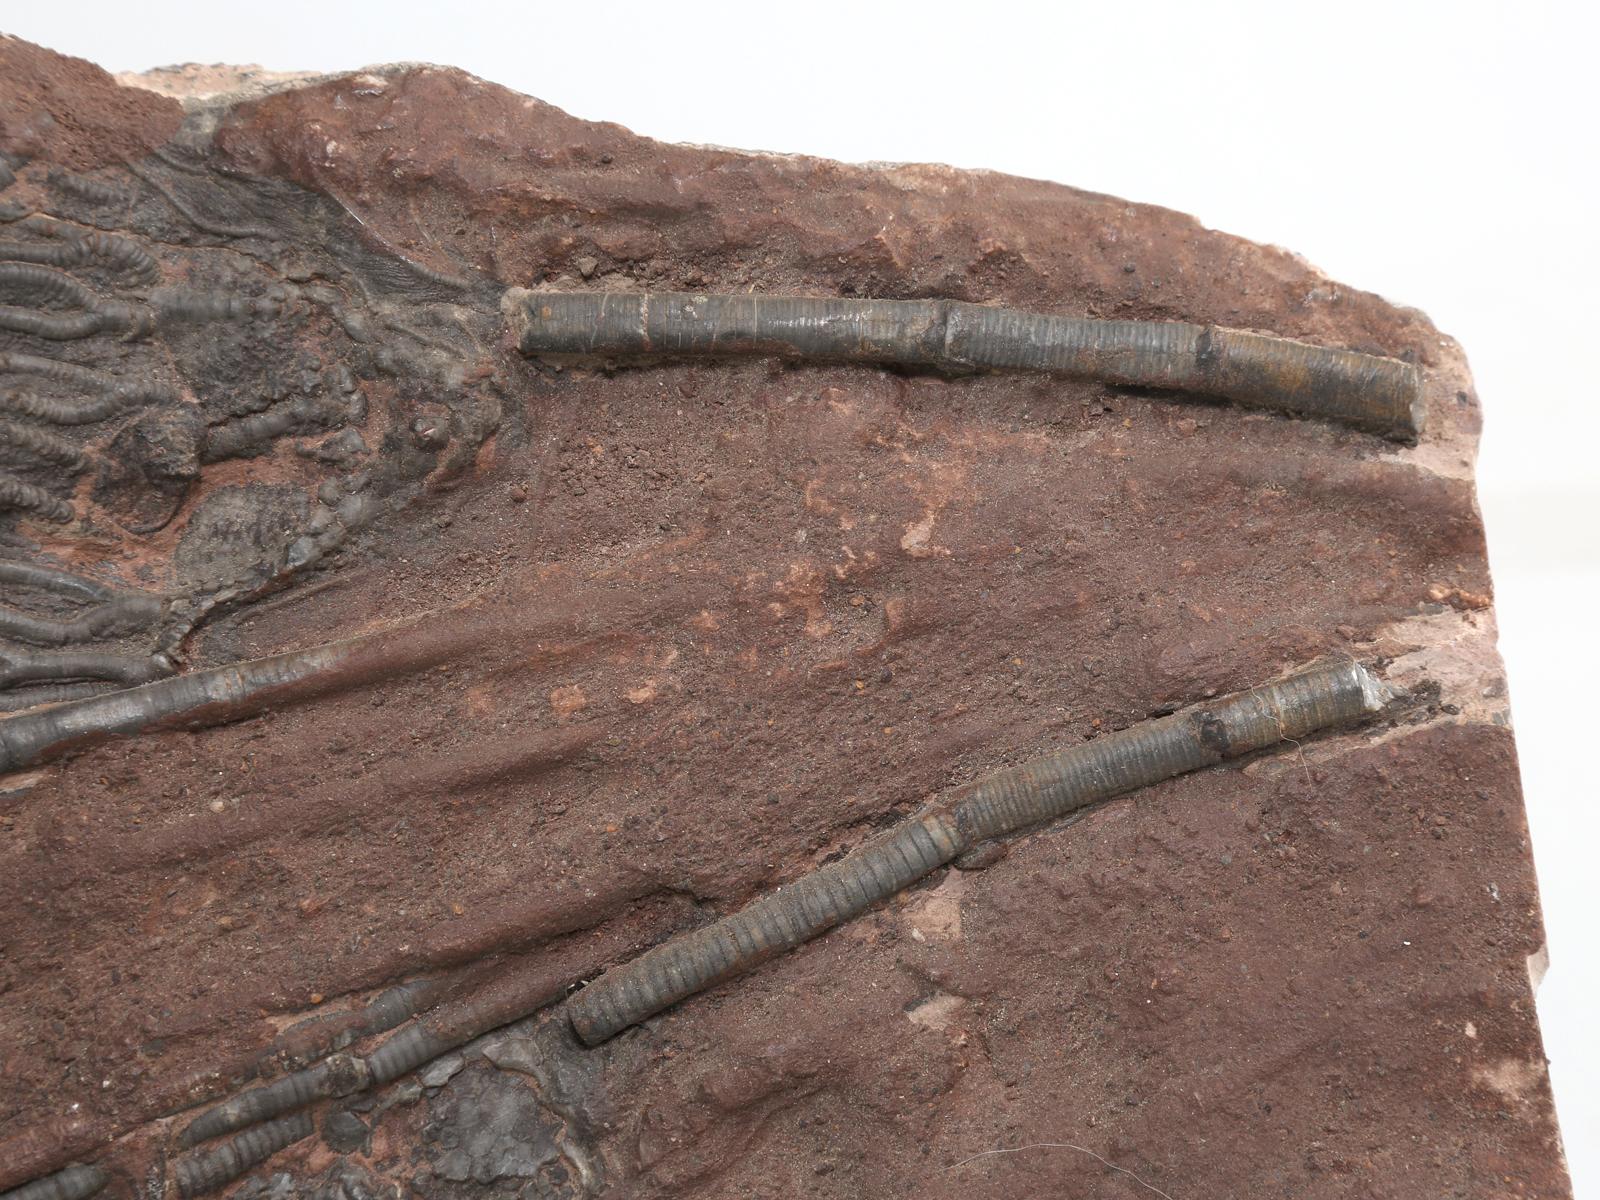 Marokkanisches Crinoid-Fossil, etwa 450 Millionen Jahre alt (Stein)